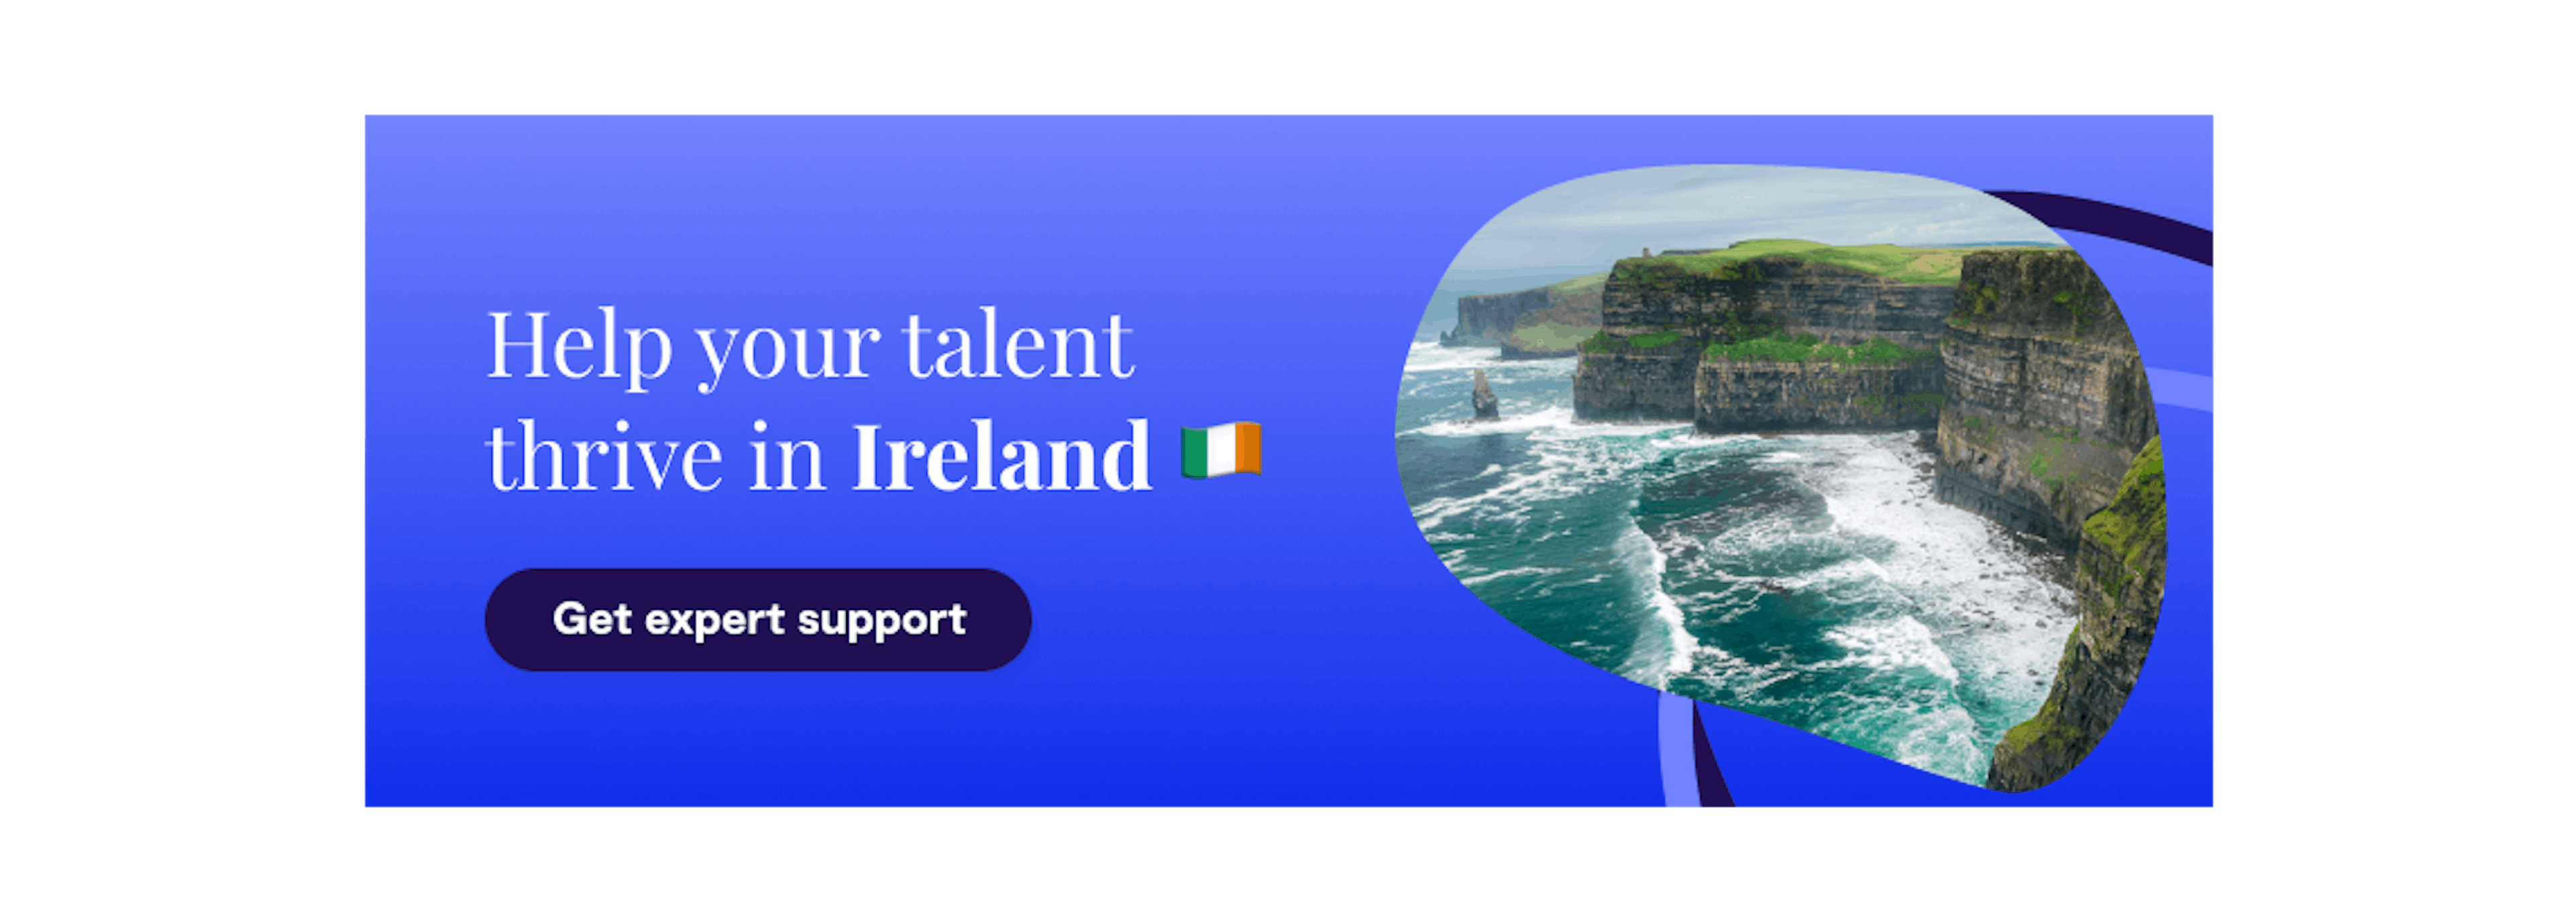 Irish work visas - Get expert support by Localyze